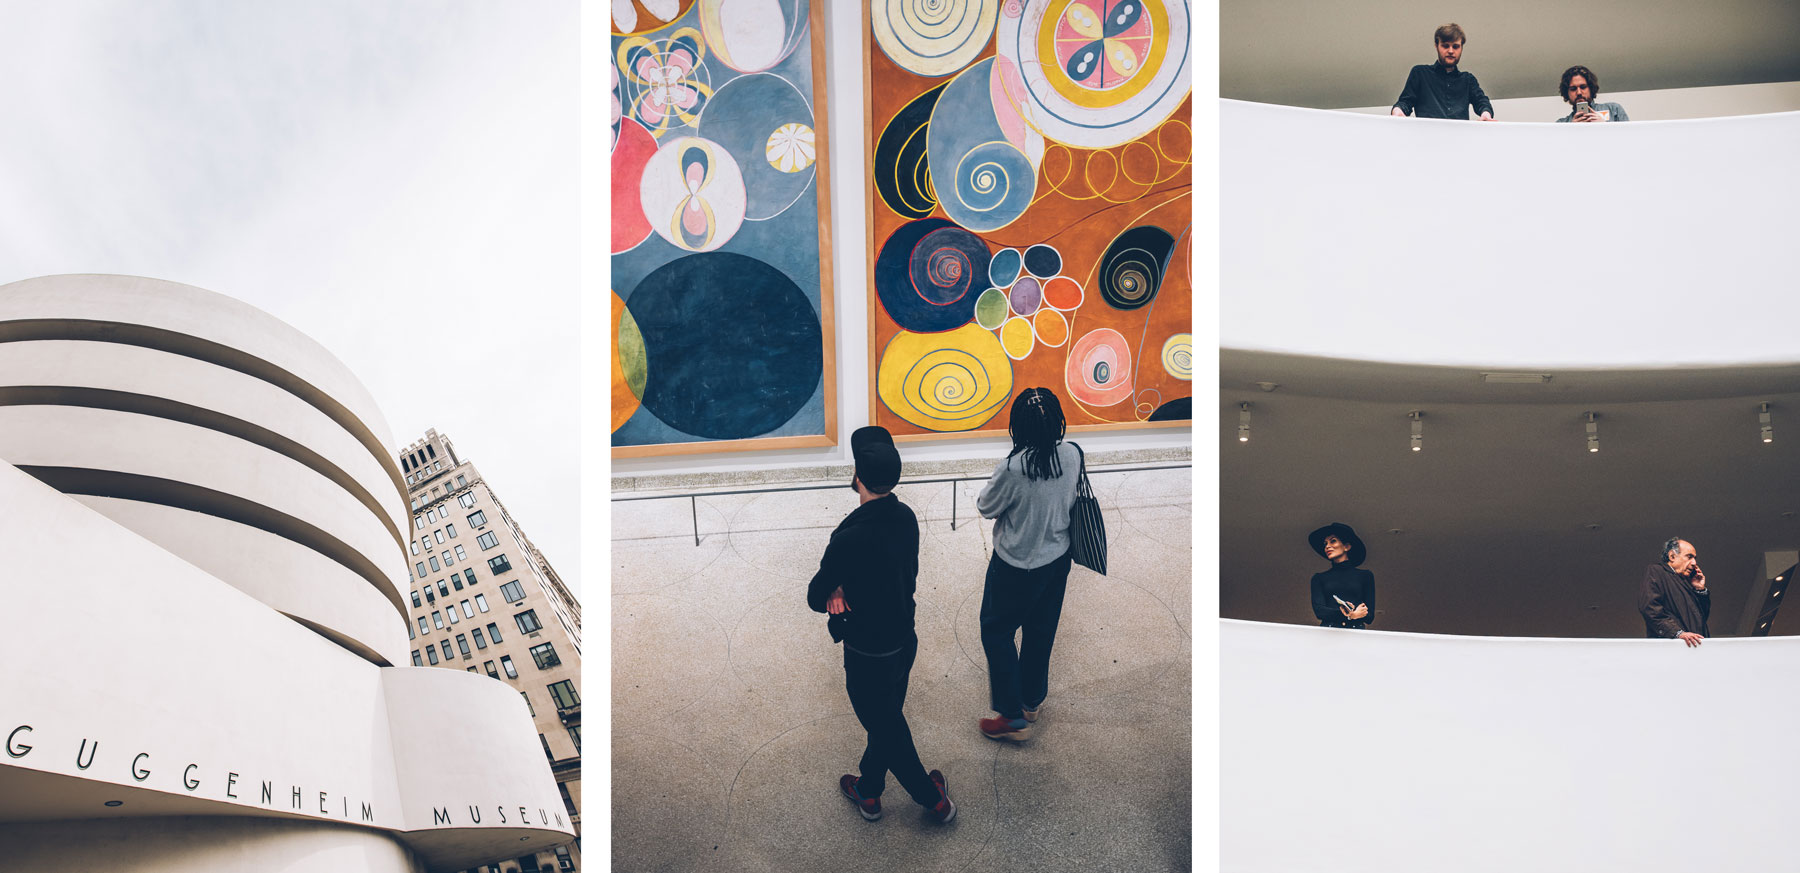 Guggenheim Musée New york